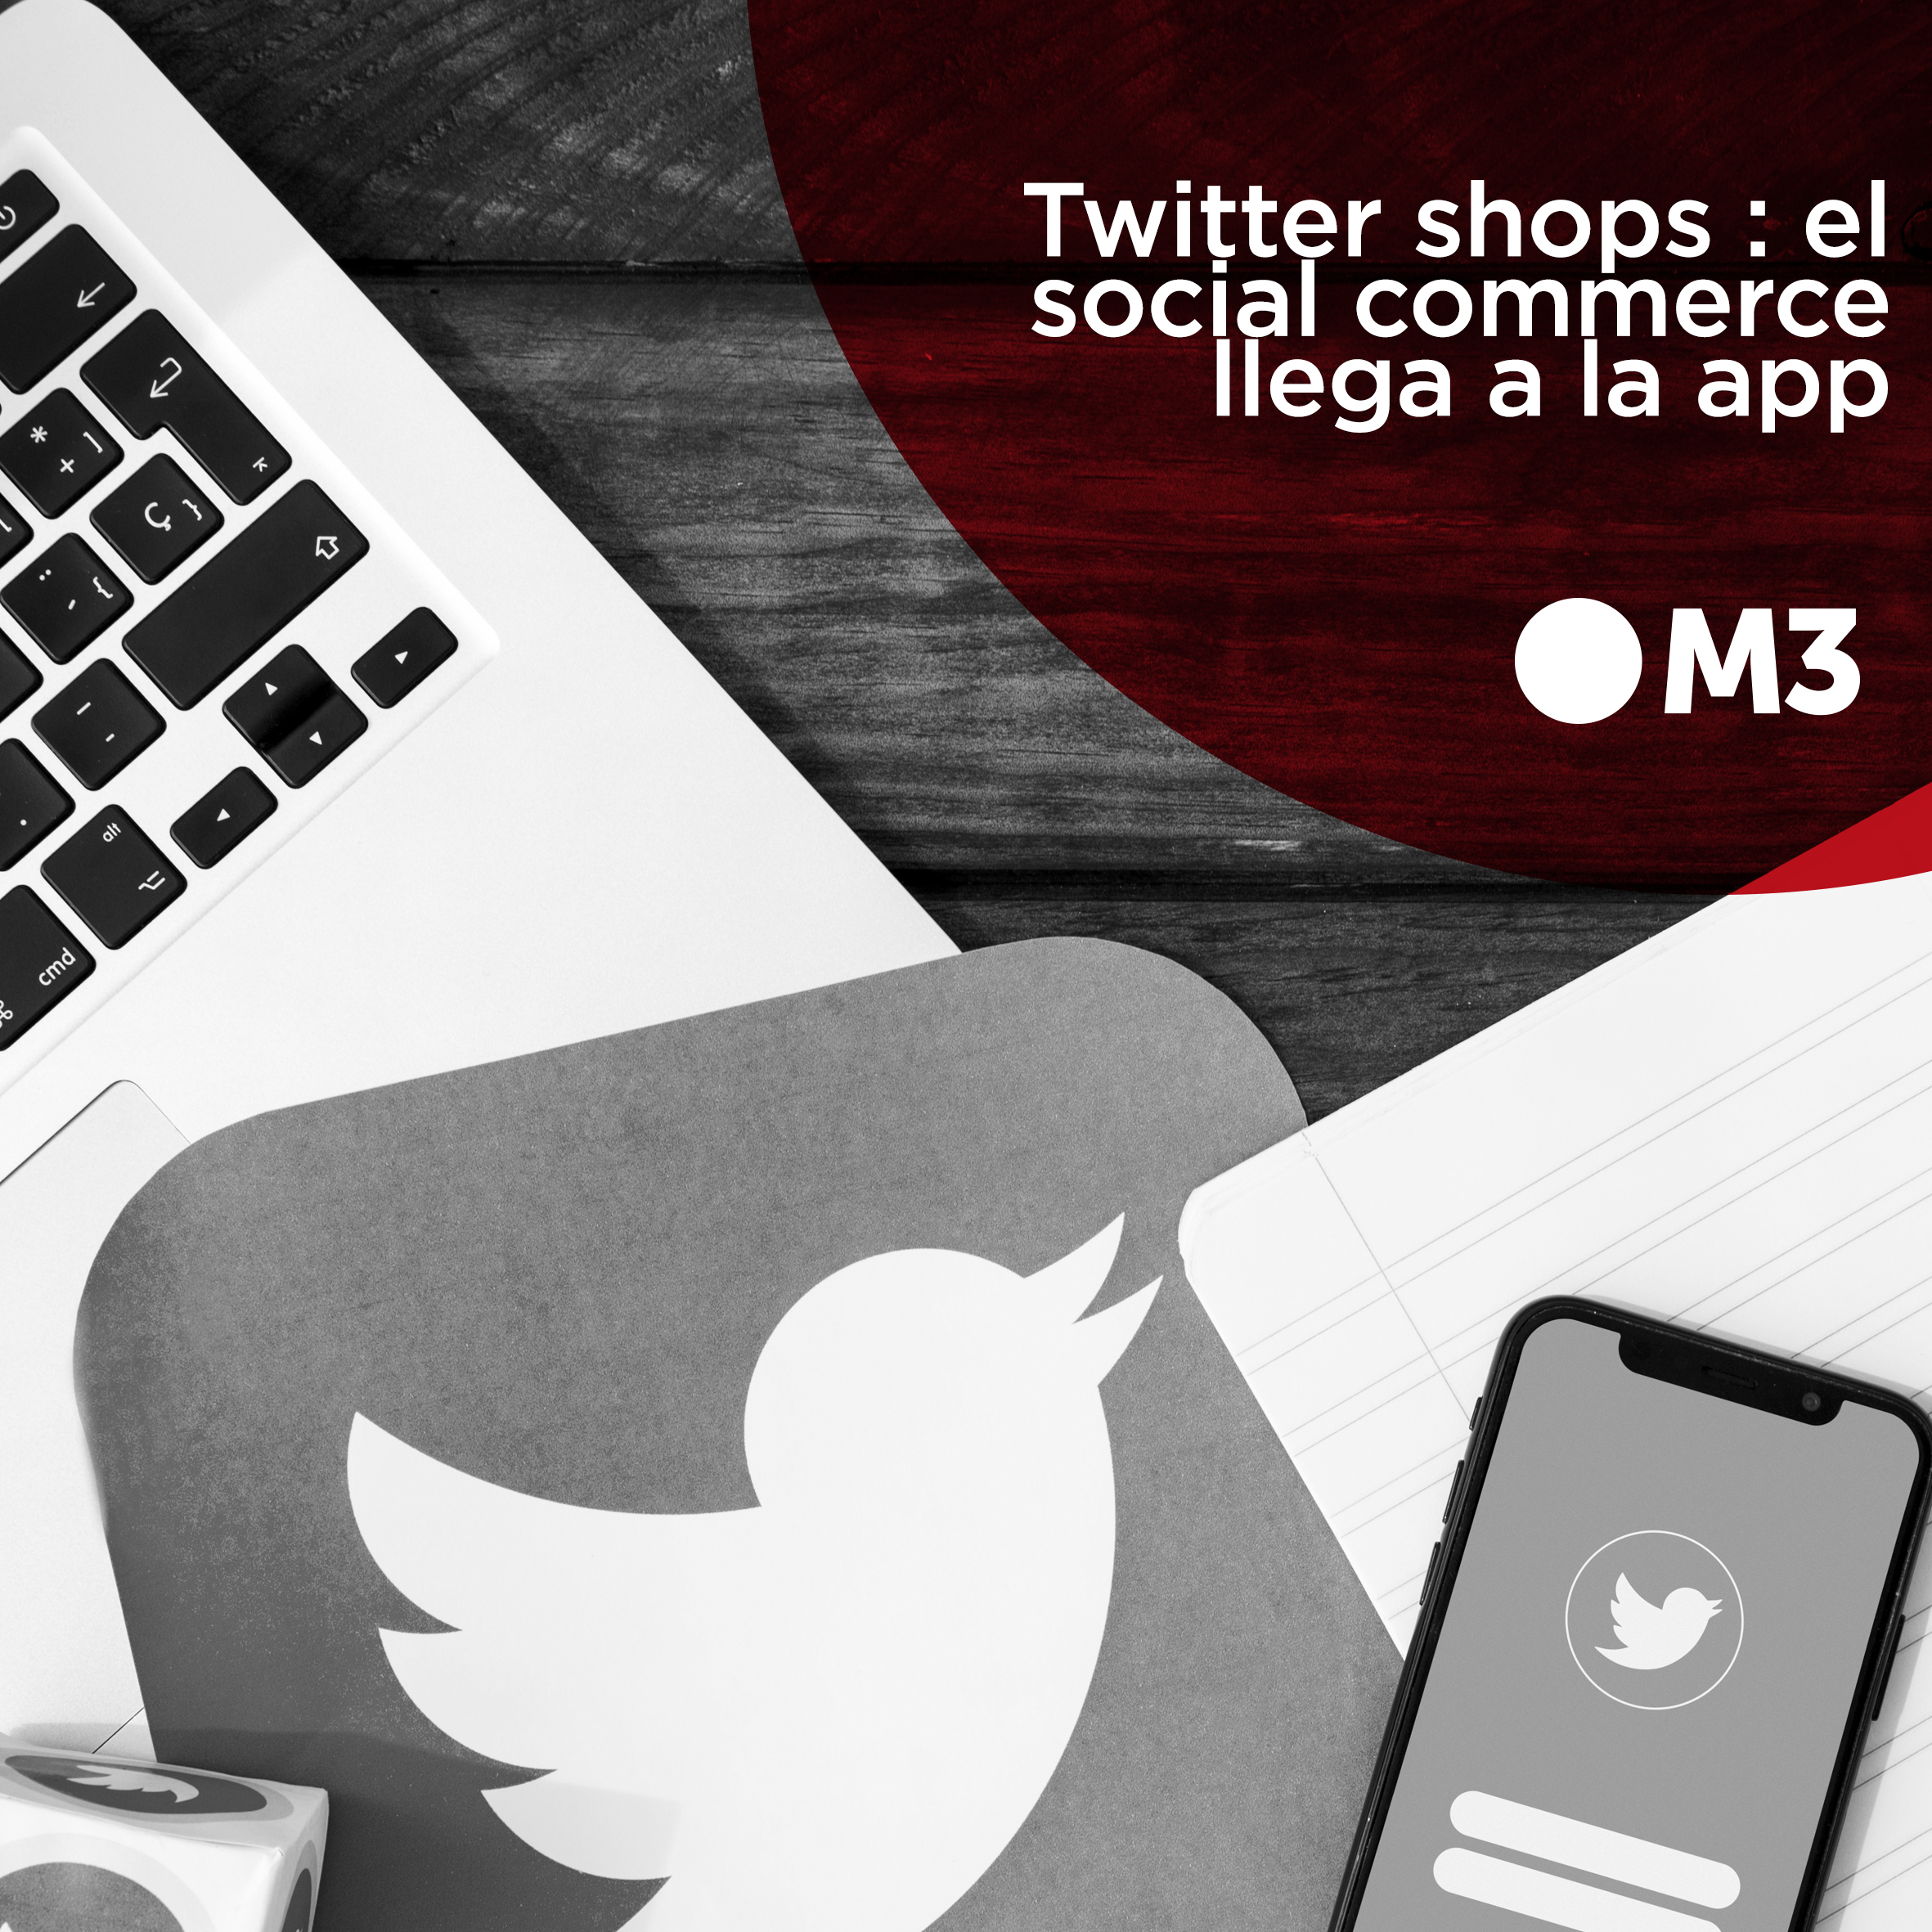 Twitter Shops: el social commerce llega por fin a la app